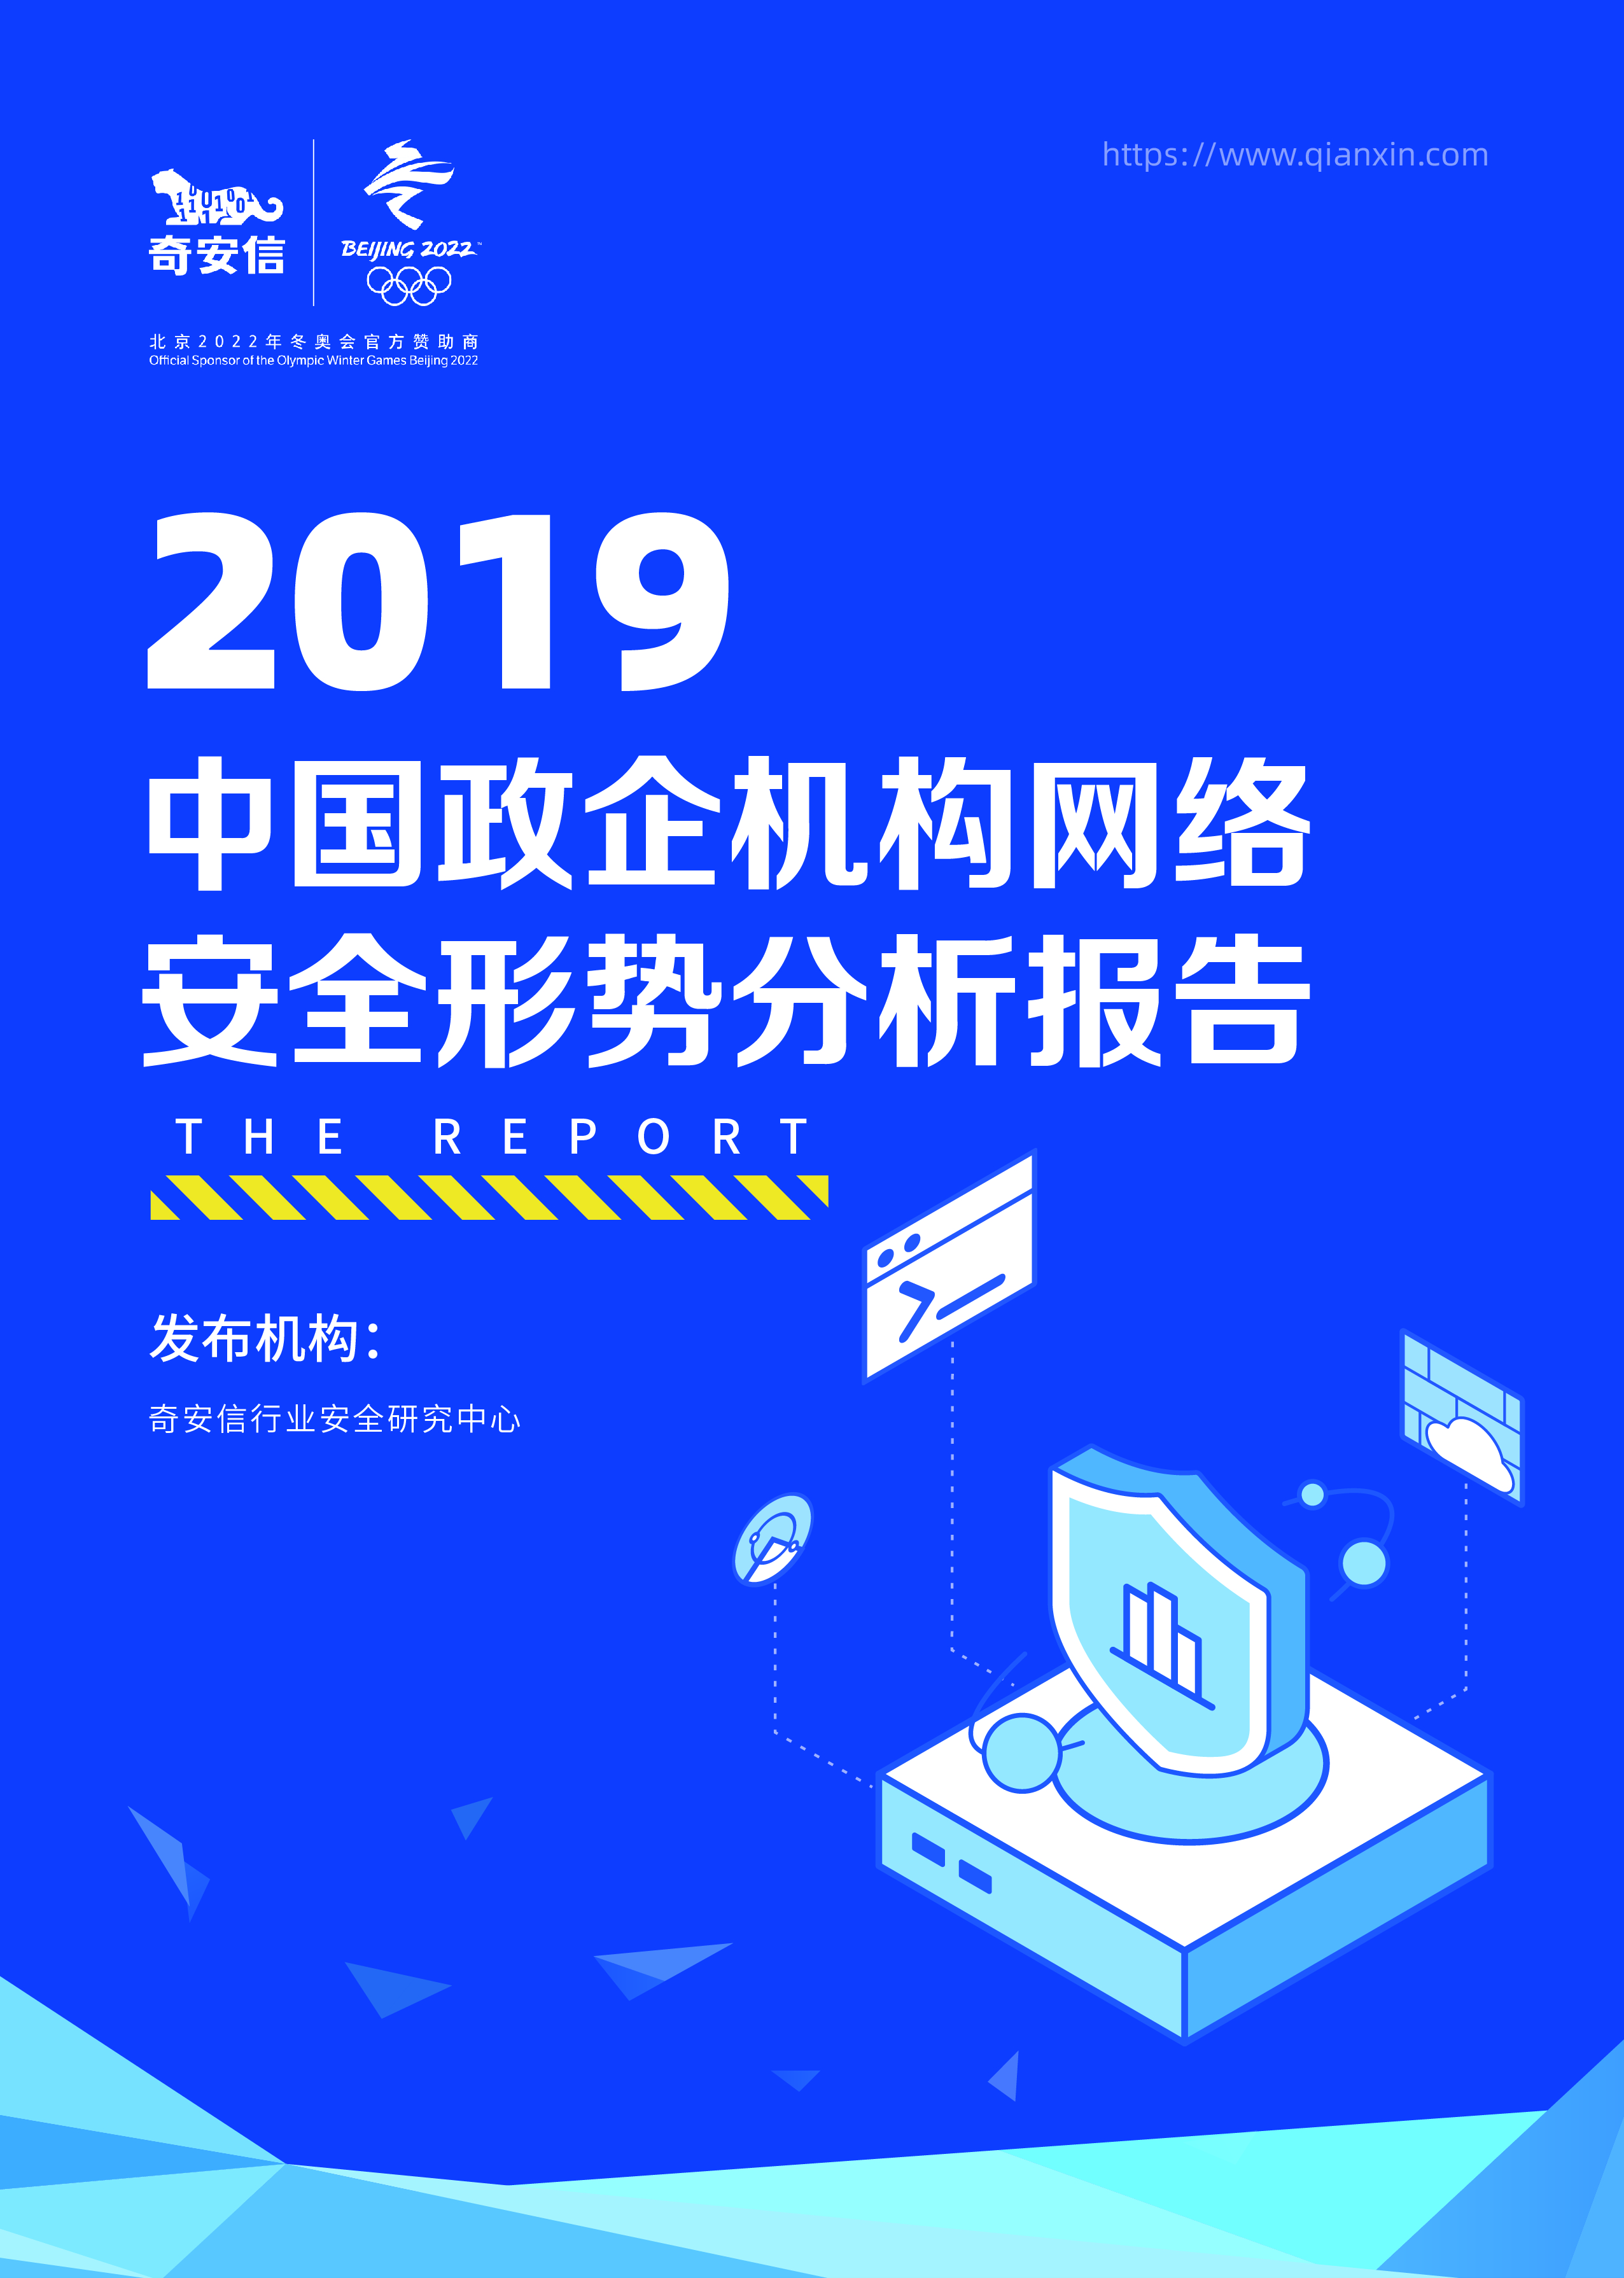 2019年中国政企机构网络安全形势分析报告